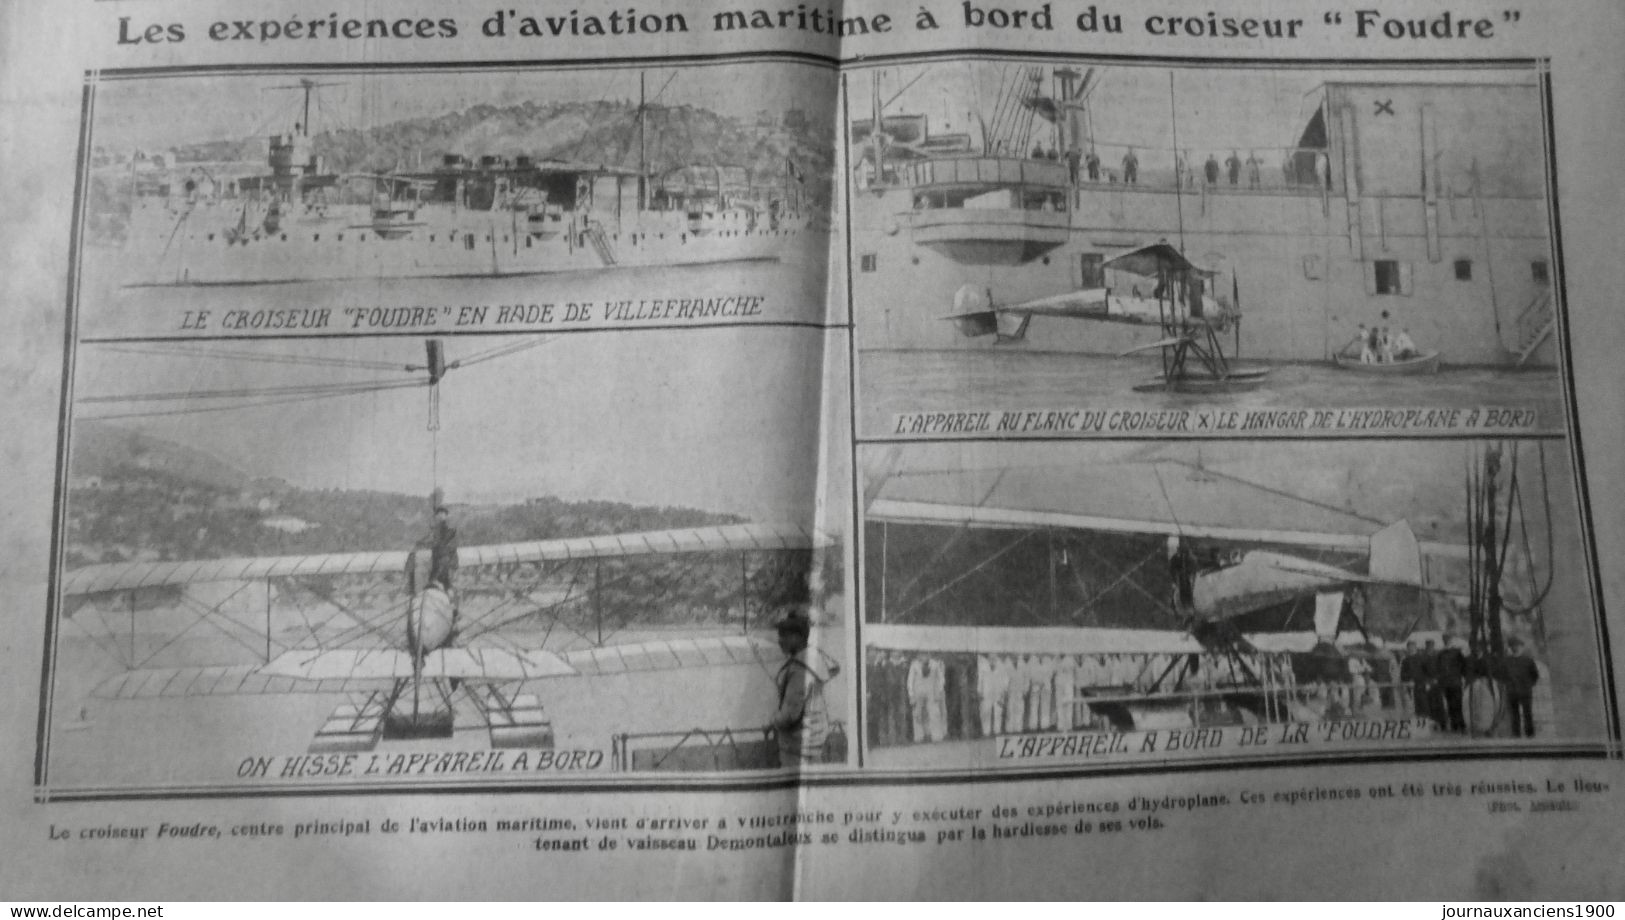 1912 EXCELSIOR ARTICLE DE PRESSE AVIATION MARITIME CROISEUR FOUDRE 1 JOURNA ANCIEN - Diapositivas De Vidrio